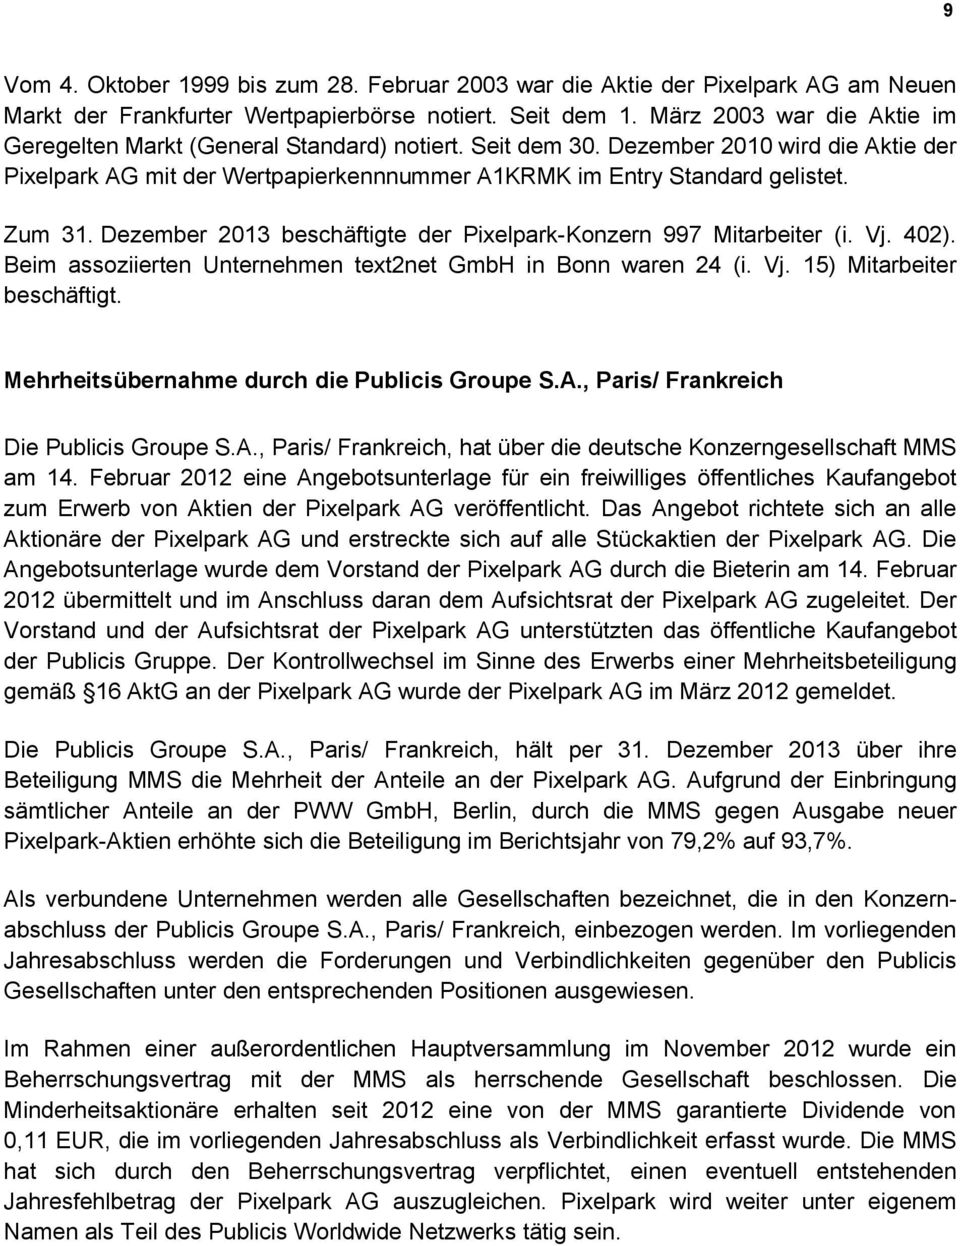 Zum 31. Dezember 2013 beschäftigte der Pixelpark-Konzern 997 Mitarbeiter (i. Vj. 402). Beim assoziierten Unternehmen text2net GmbH in Bonn waren 24 (i. Vj. 15) Mitarbeiter beschäftigt.